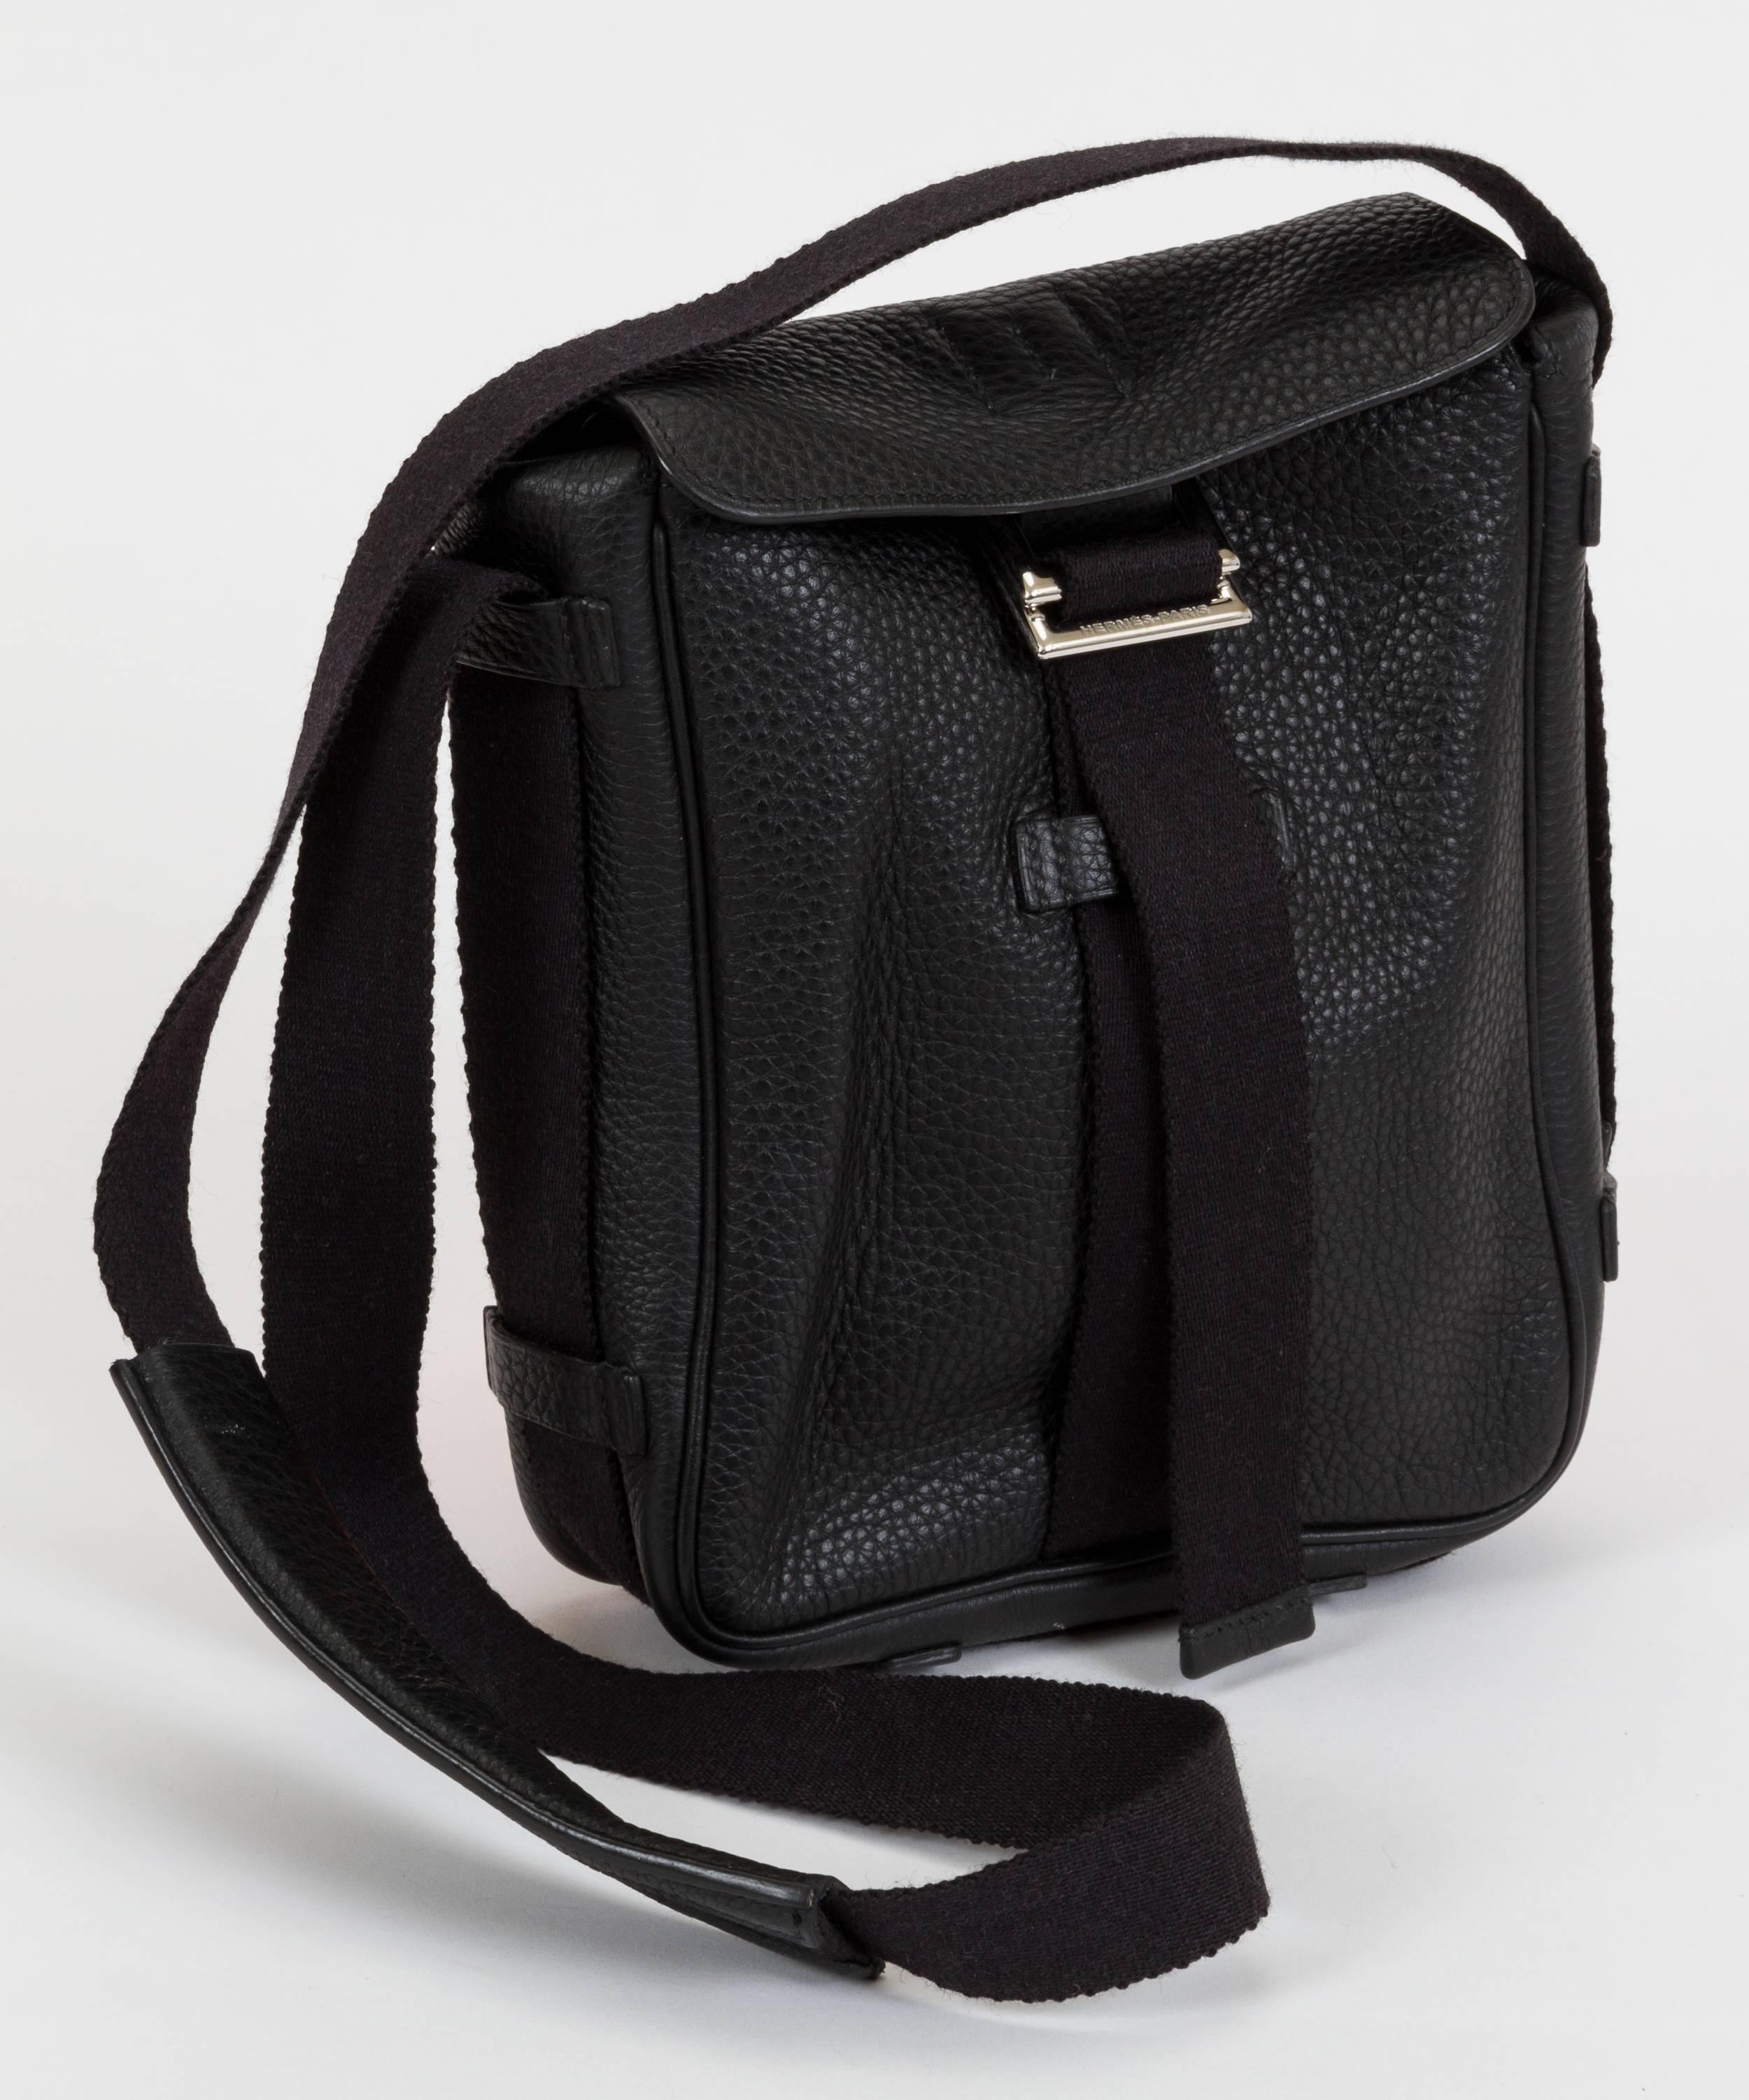 Hermès men's shoulder bag in clemence black leather with toile strap. Shoulder drop, 20